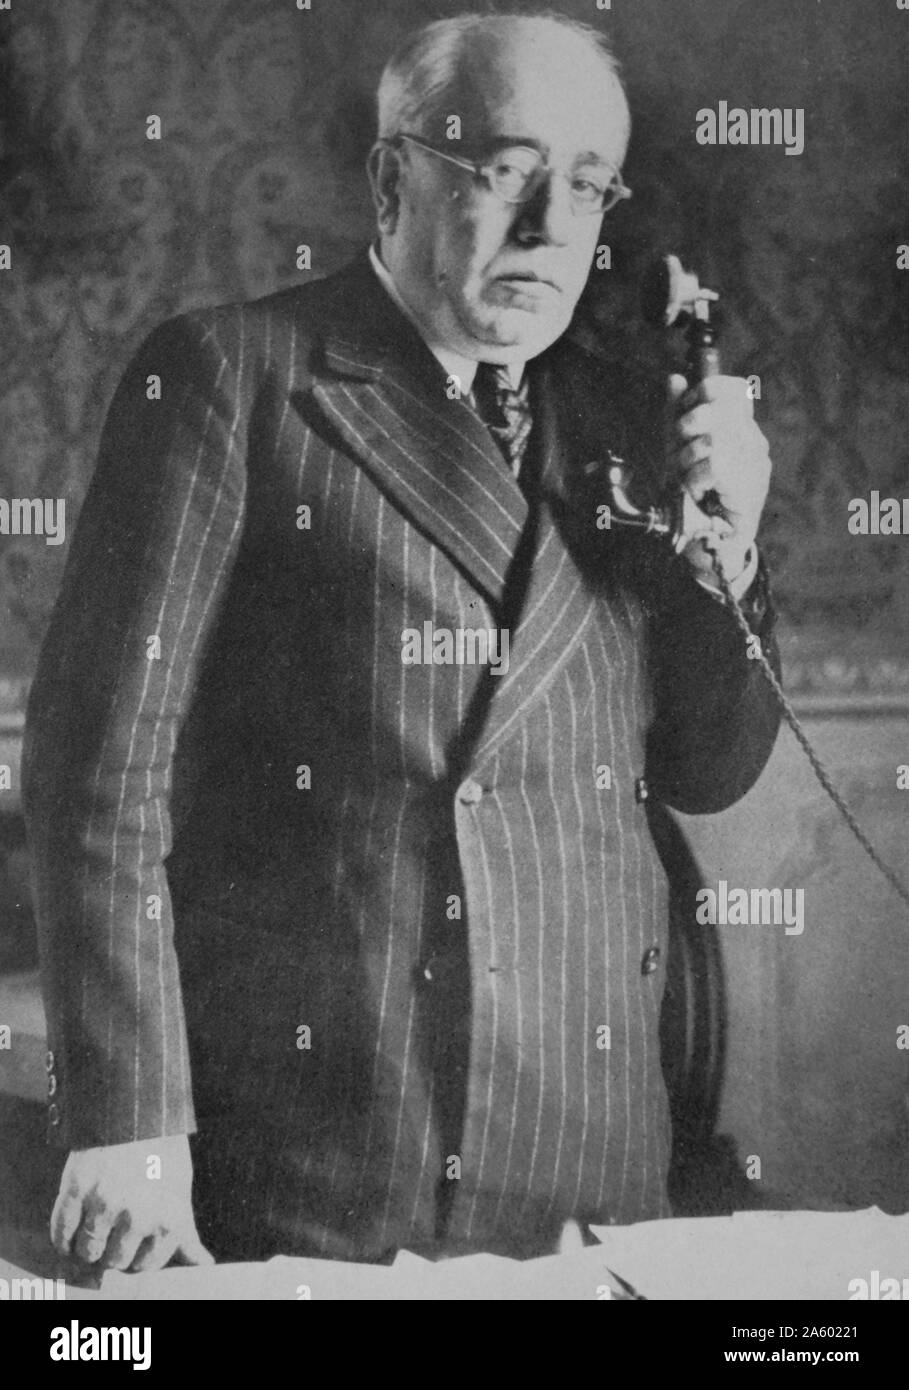 Manuel Azana Diaz (prononciation espagnole : [Janvier 10, 1880 - Novembre 3, 1940) a été le premier Premier Ministre de la Deuxième République espagnole (1931-1933), et il a servi plus tard à nouveau comme premier ministre (1936), puis comme le deuxième et dernier président de la République (1936-1939). La guerre civile espagnole a éclaté alors qu'il était président. Avec la défaite de la République en 1939, il a fui en France Banque D'Images